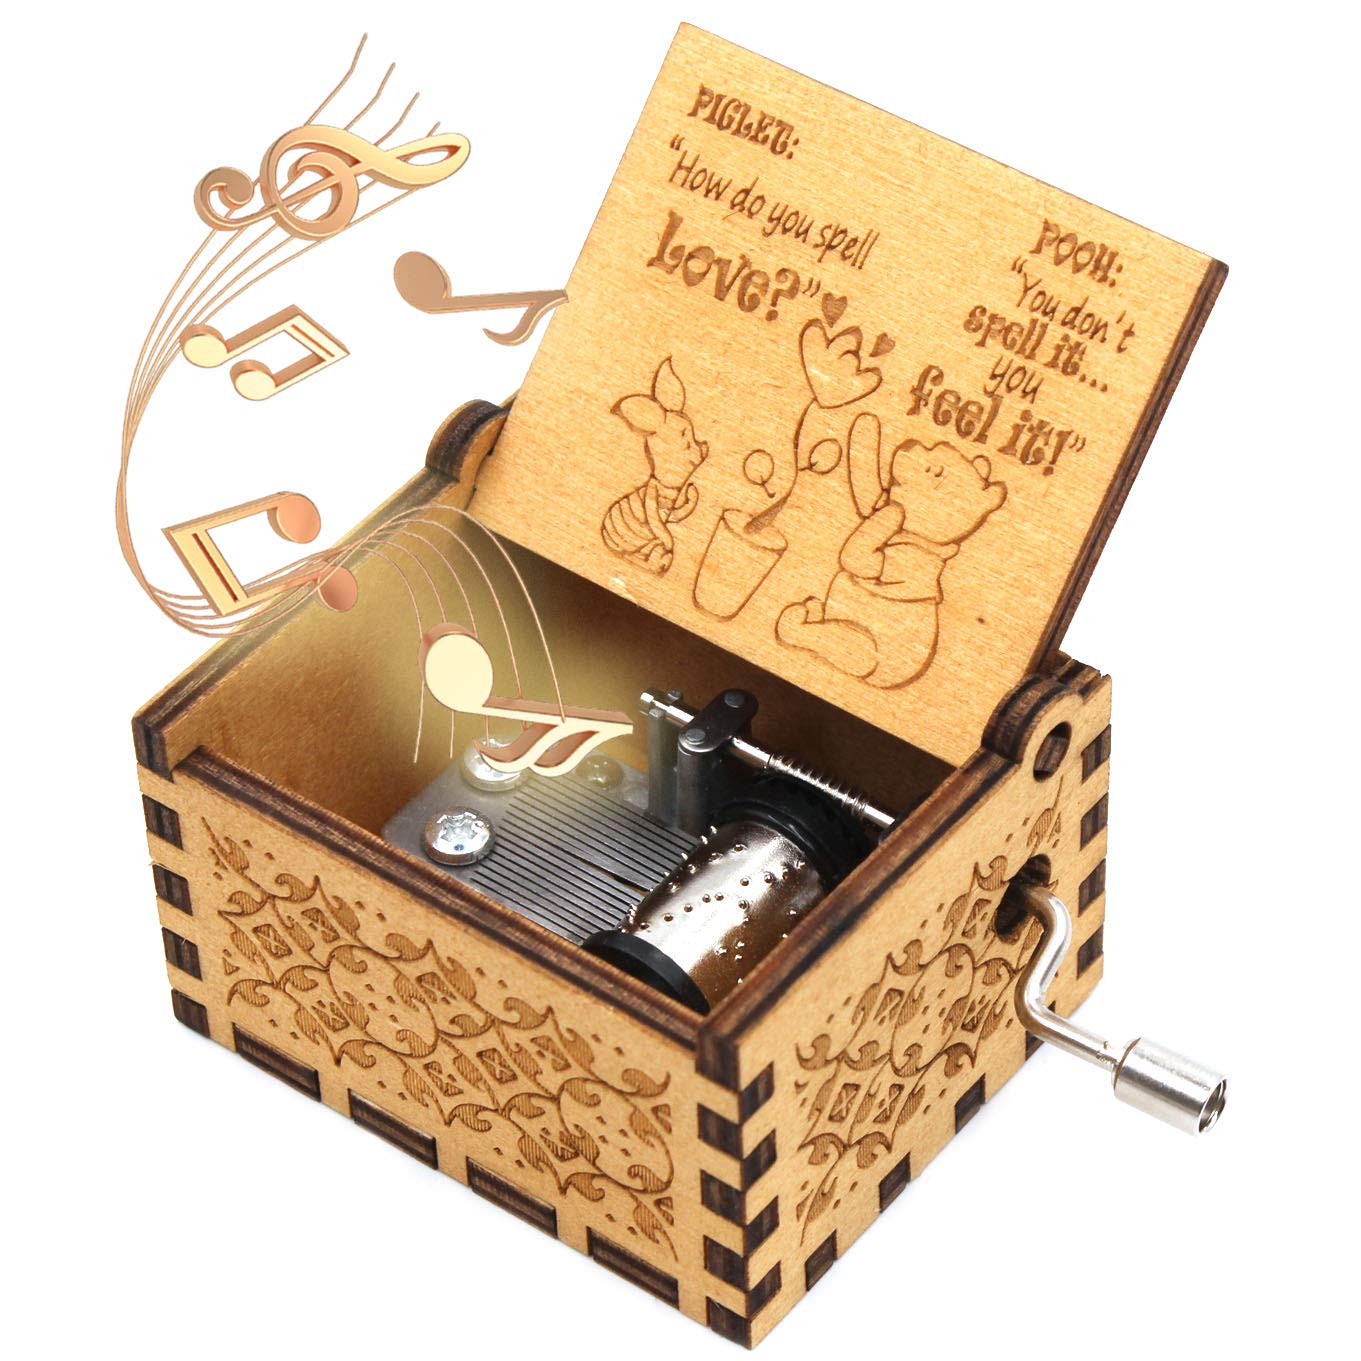 Hộp nhạc gỗ - The Pooh Saying Music Box là một sản phẩm mang lại sự sang trọng, độc đáo và đầy tình cảm. Với chất liệu gỗ cao cấp và thiết kế đơn giản nhưng thanh lịch, hộp nhạc gỗ này sẽ là món quà đặc biệt dành cho những người bạn thân, người thân trong dịp Giáng Sinh này. Hãy cùng xem hình ảnh về hộp nhạc gỗ này để cảm nhận sự đẳng cấp và độc đáo của nó.